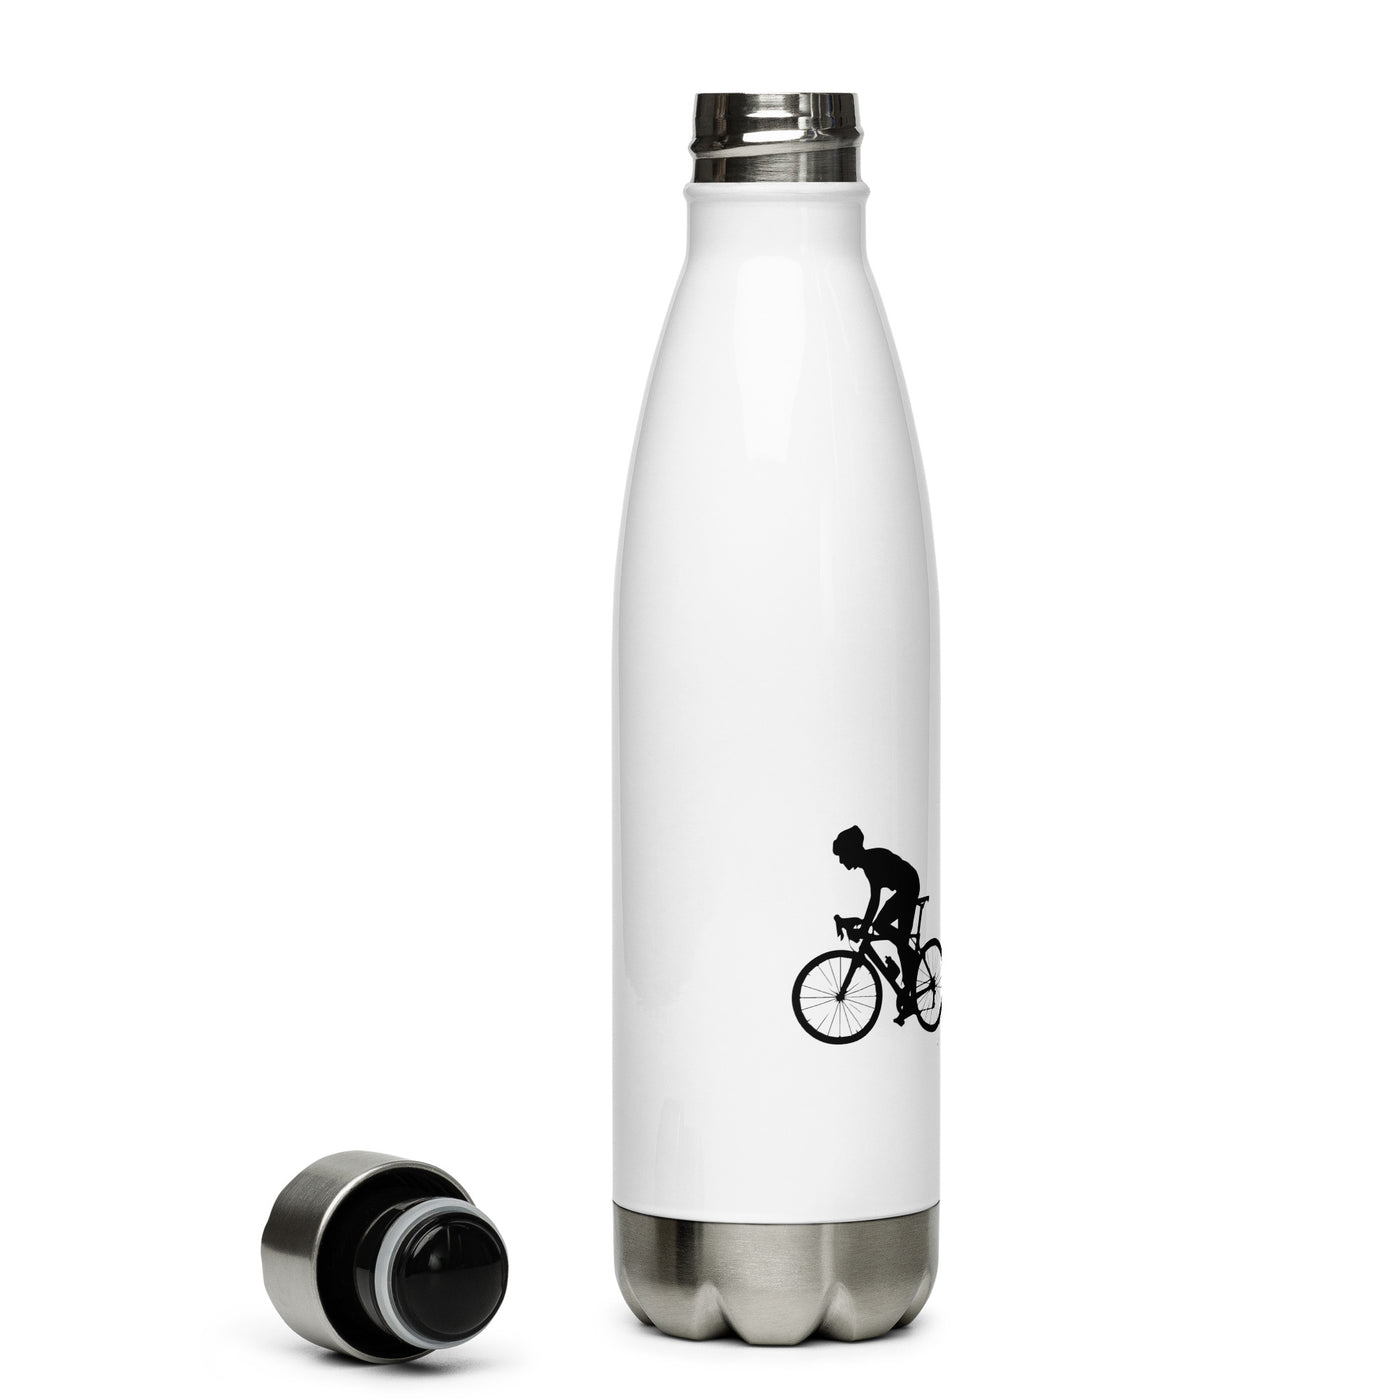 Radfahren (9) - Edelstahl Trinkflasche fahrrad